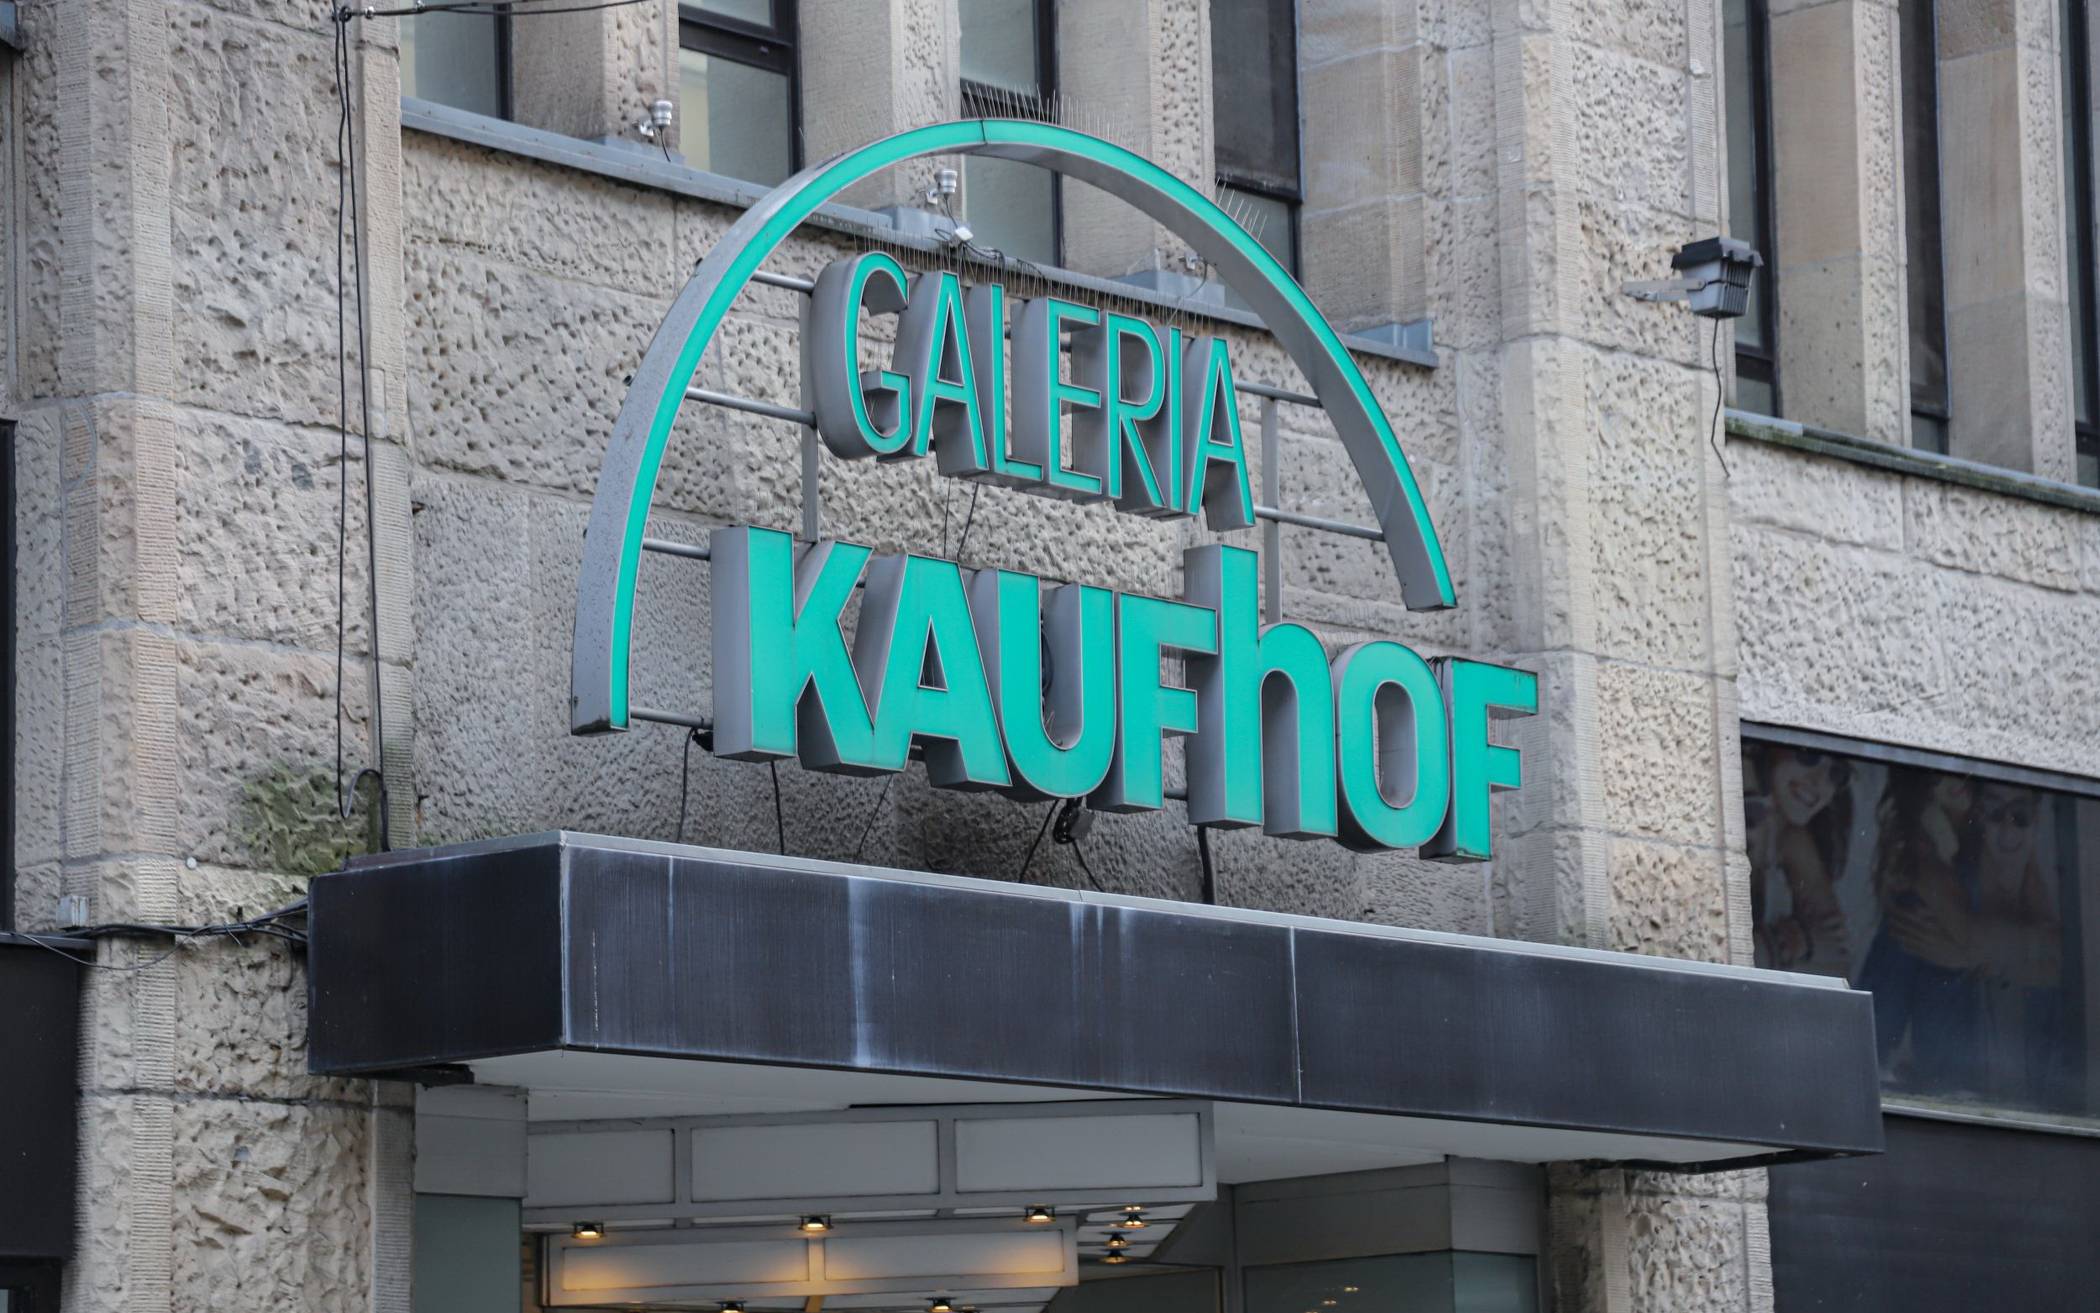 Kaufhof, Kilos, Kalorien